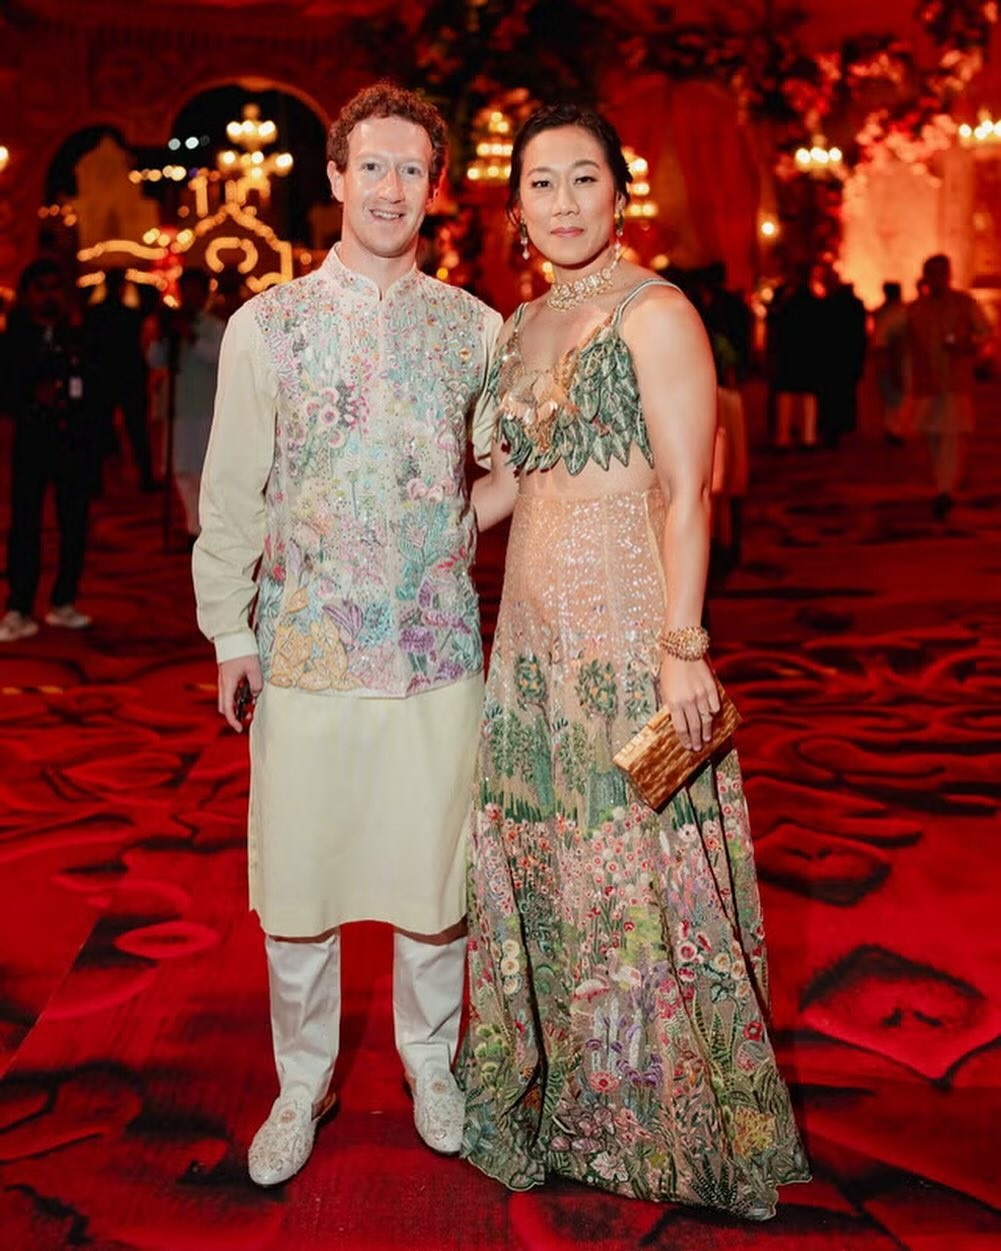 View - CEO Facebook và vợ mặc đồ "phô trương" tại bữa tiệc của tỷ phú Ấn Độ | Báo Dân trí